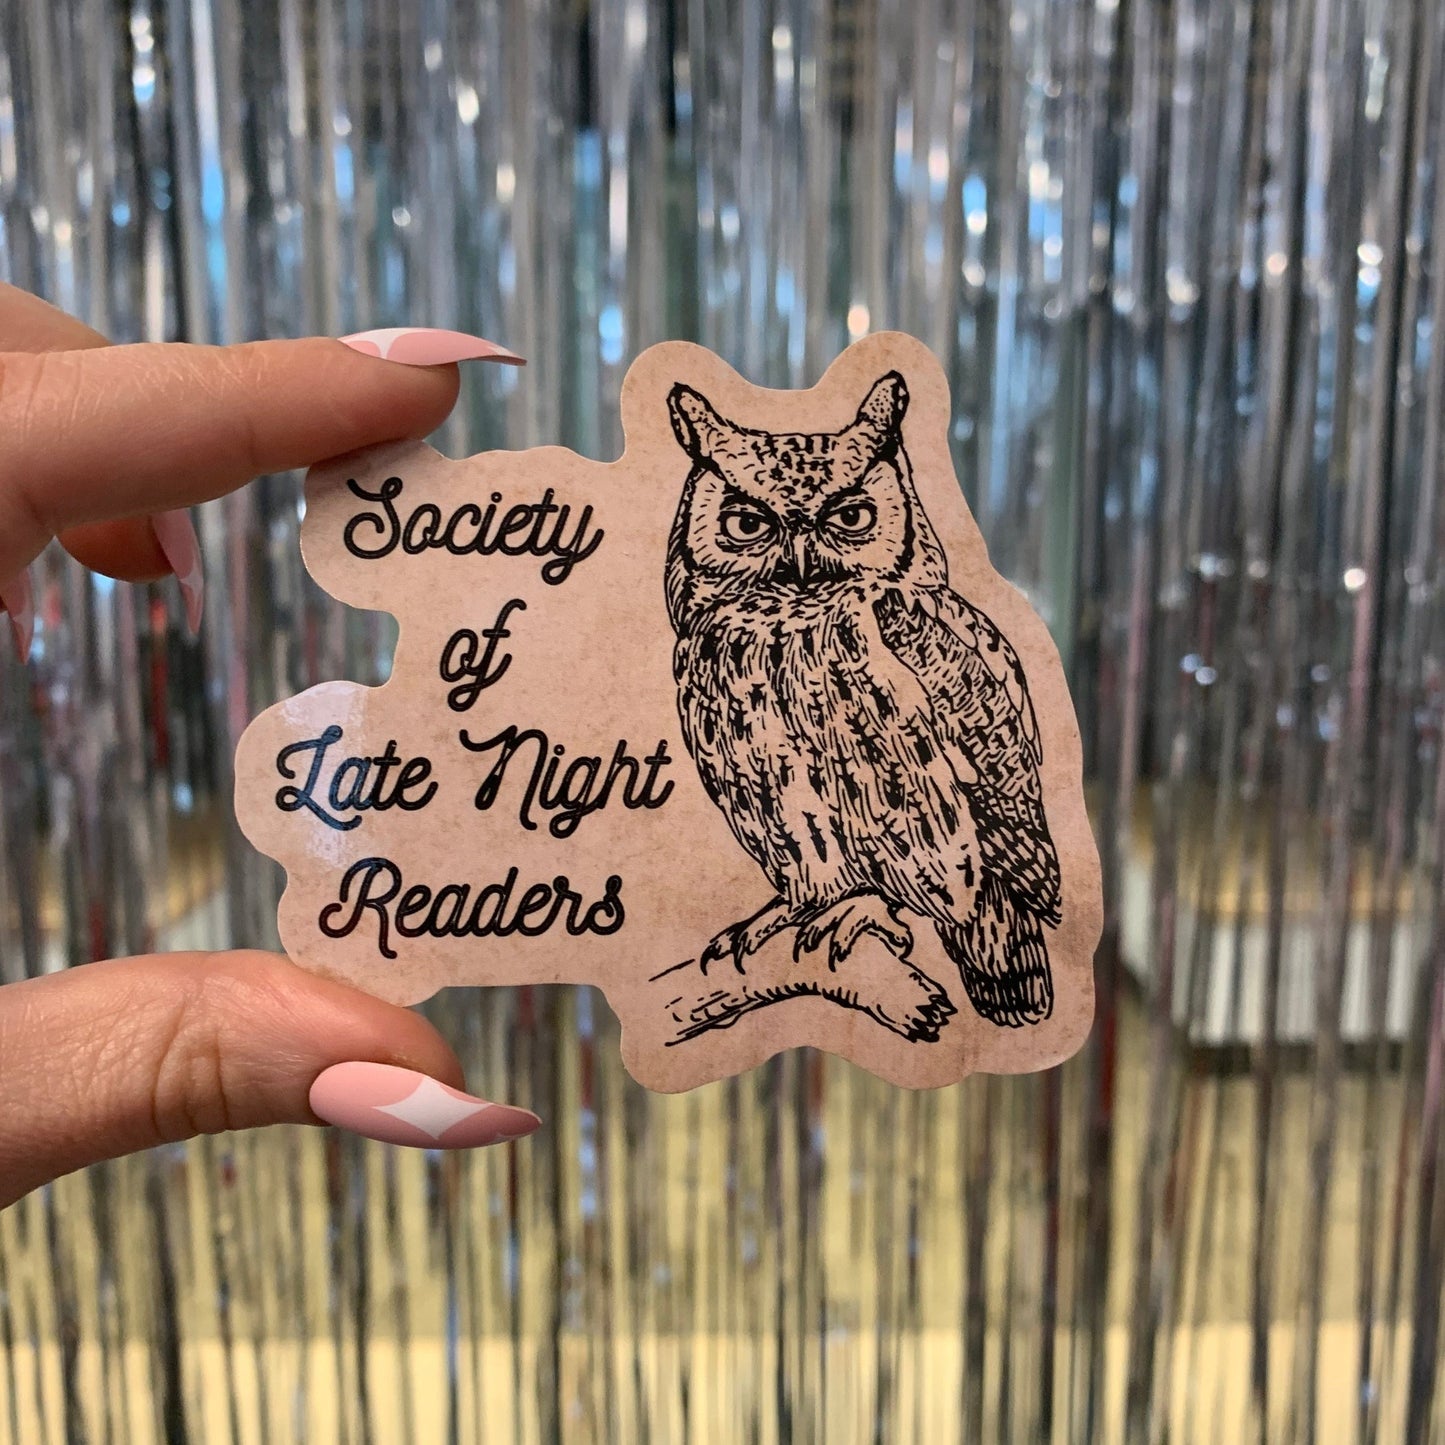 Society Of Late Night Readers Die Cut Owl Vinyl Sticker